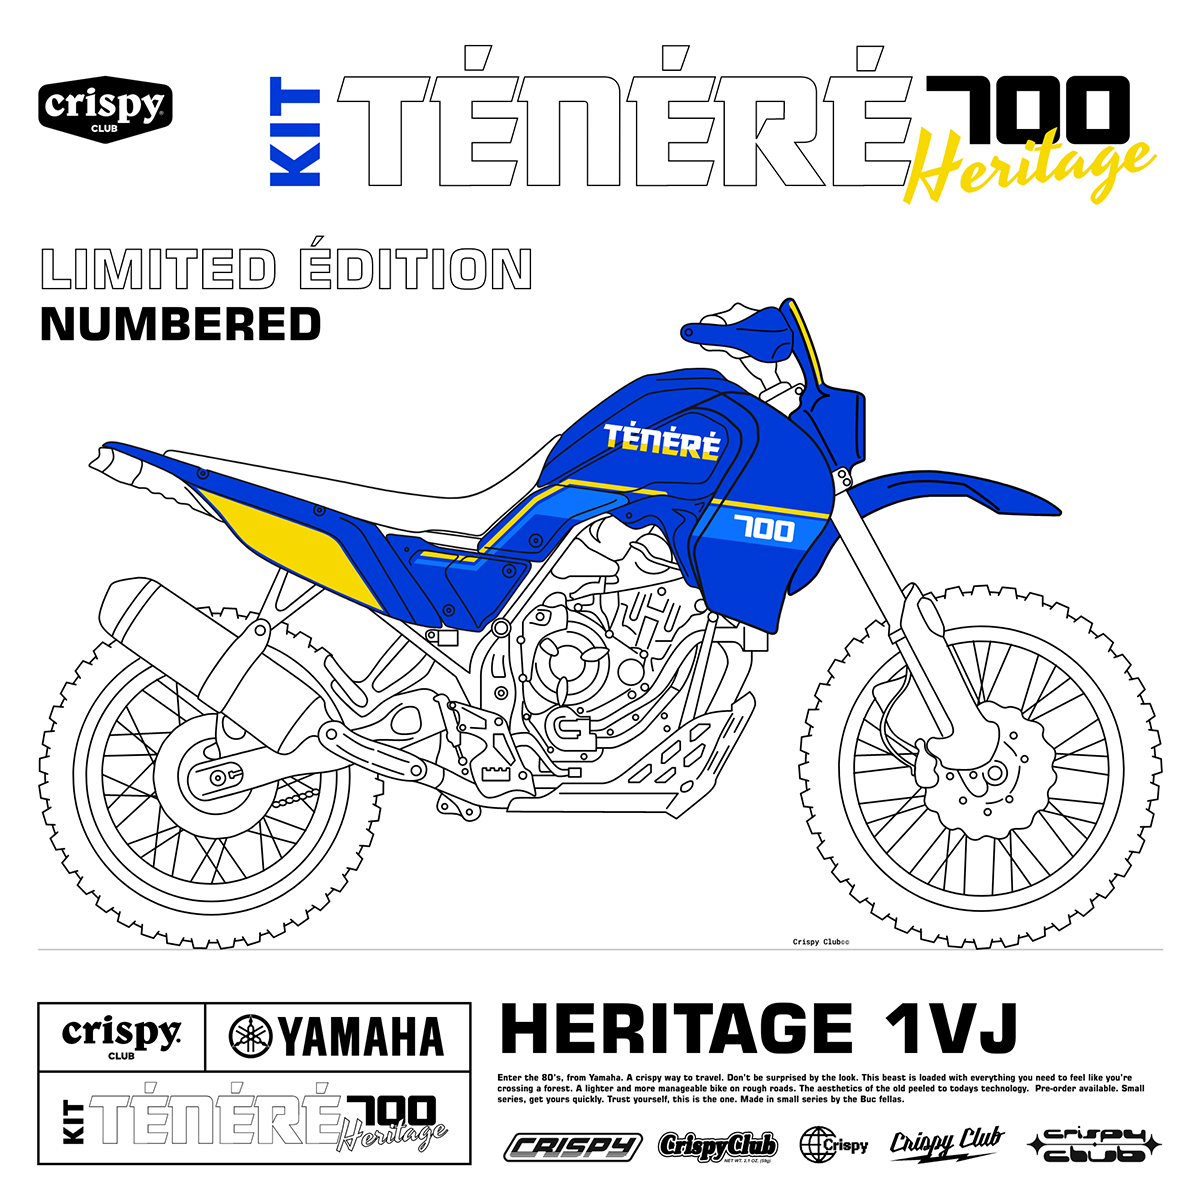 Este kit Heritage para la Yamaha Ténéré 700 sustituye todo el carenado al completo, además de la luz delantera